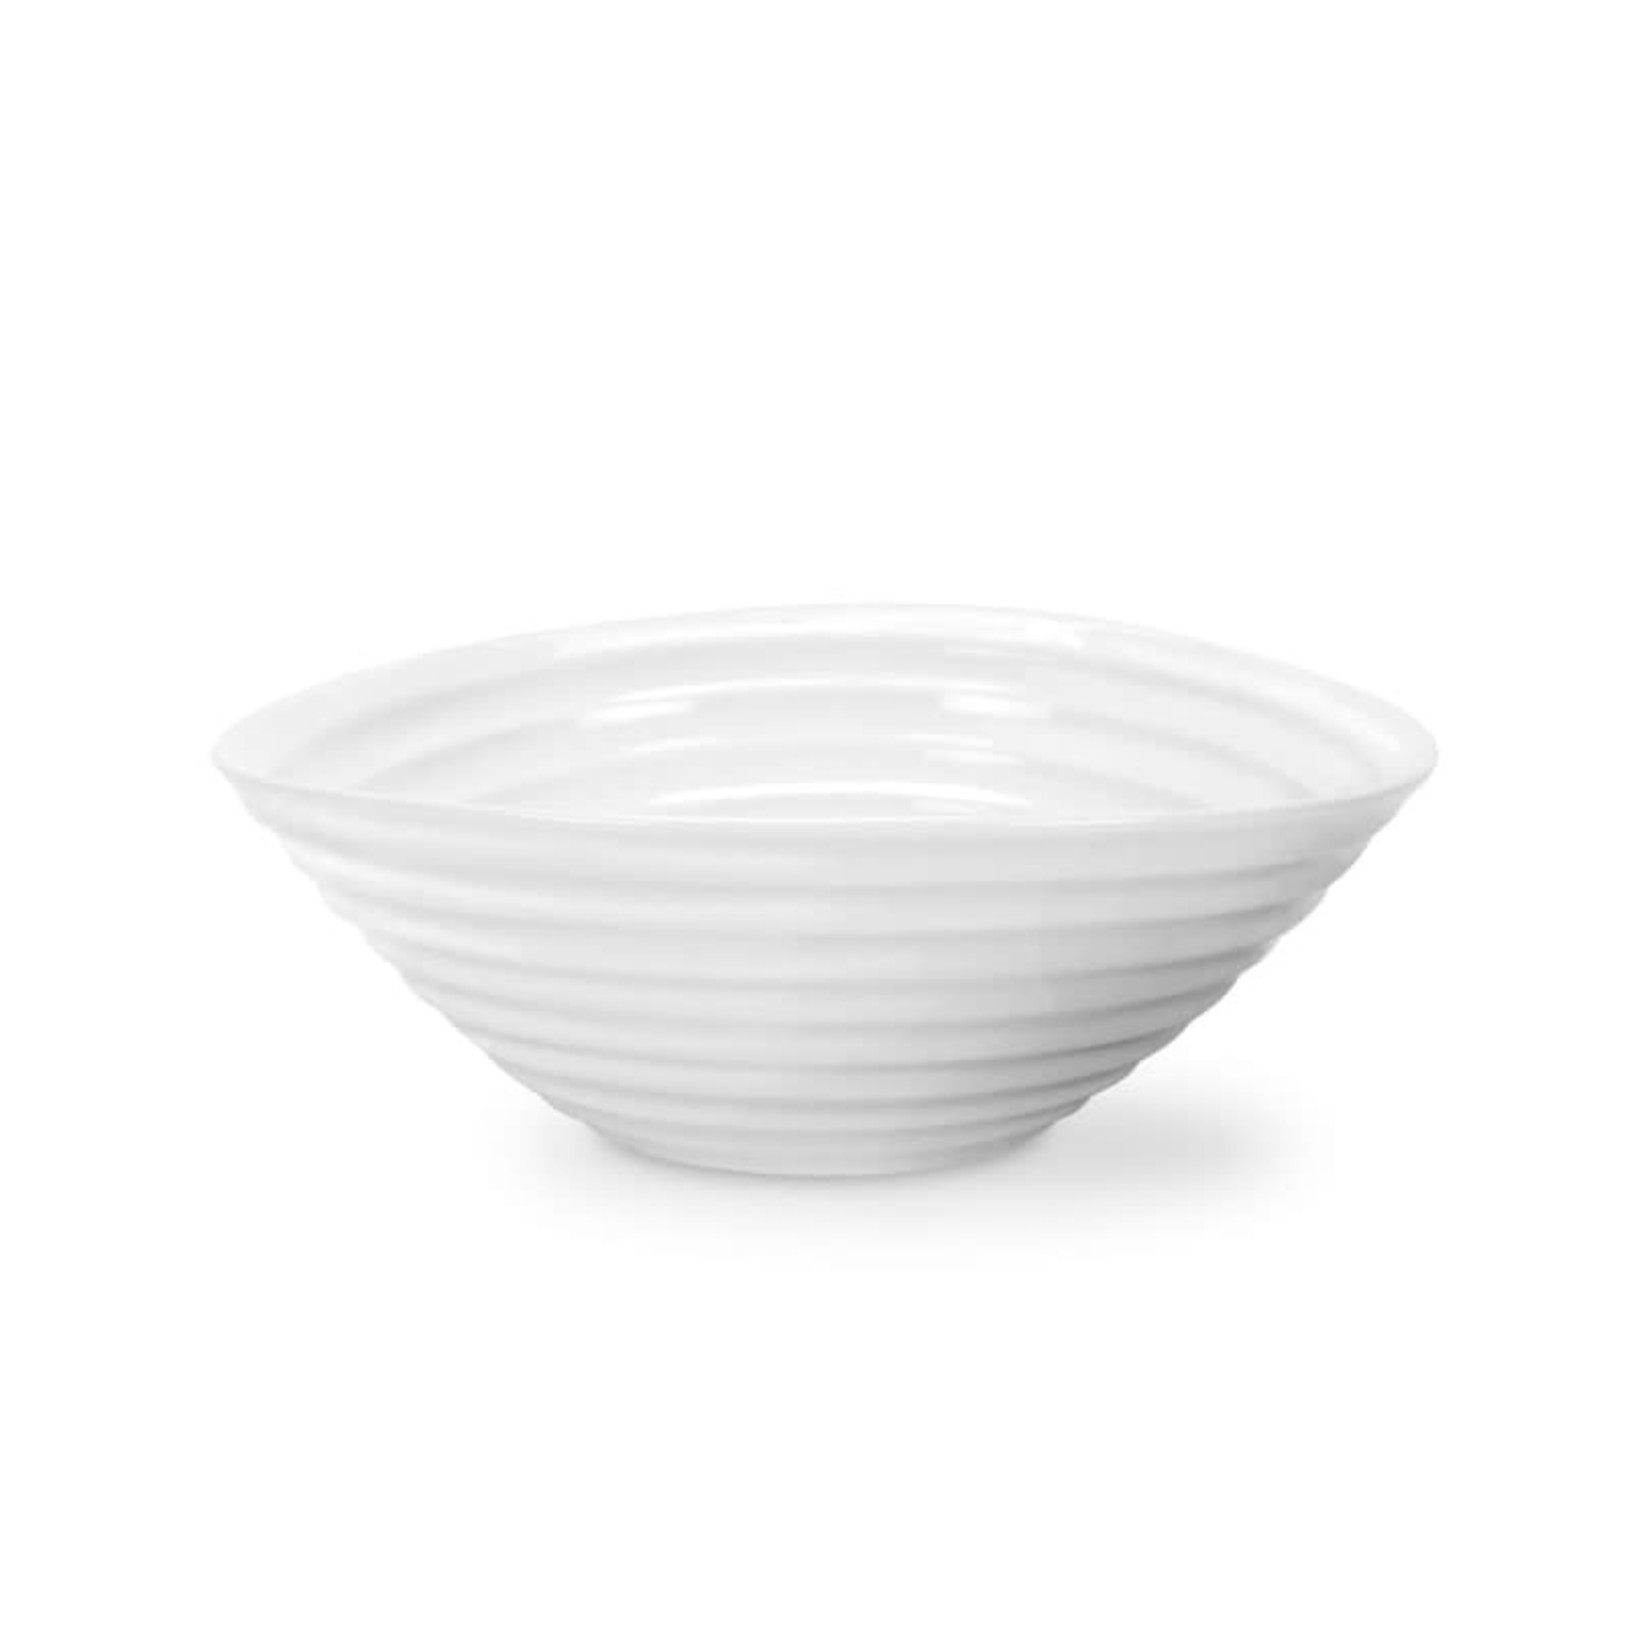 SOPHIE CONRAN SOPHIE CONRAN Cereal Bowl 7.5" - White